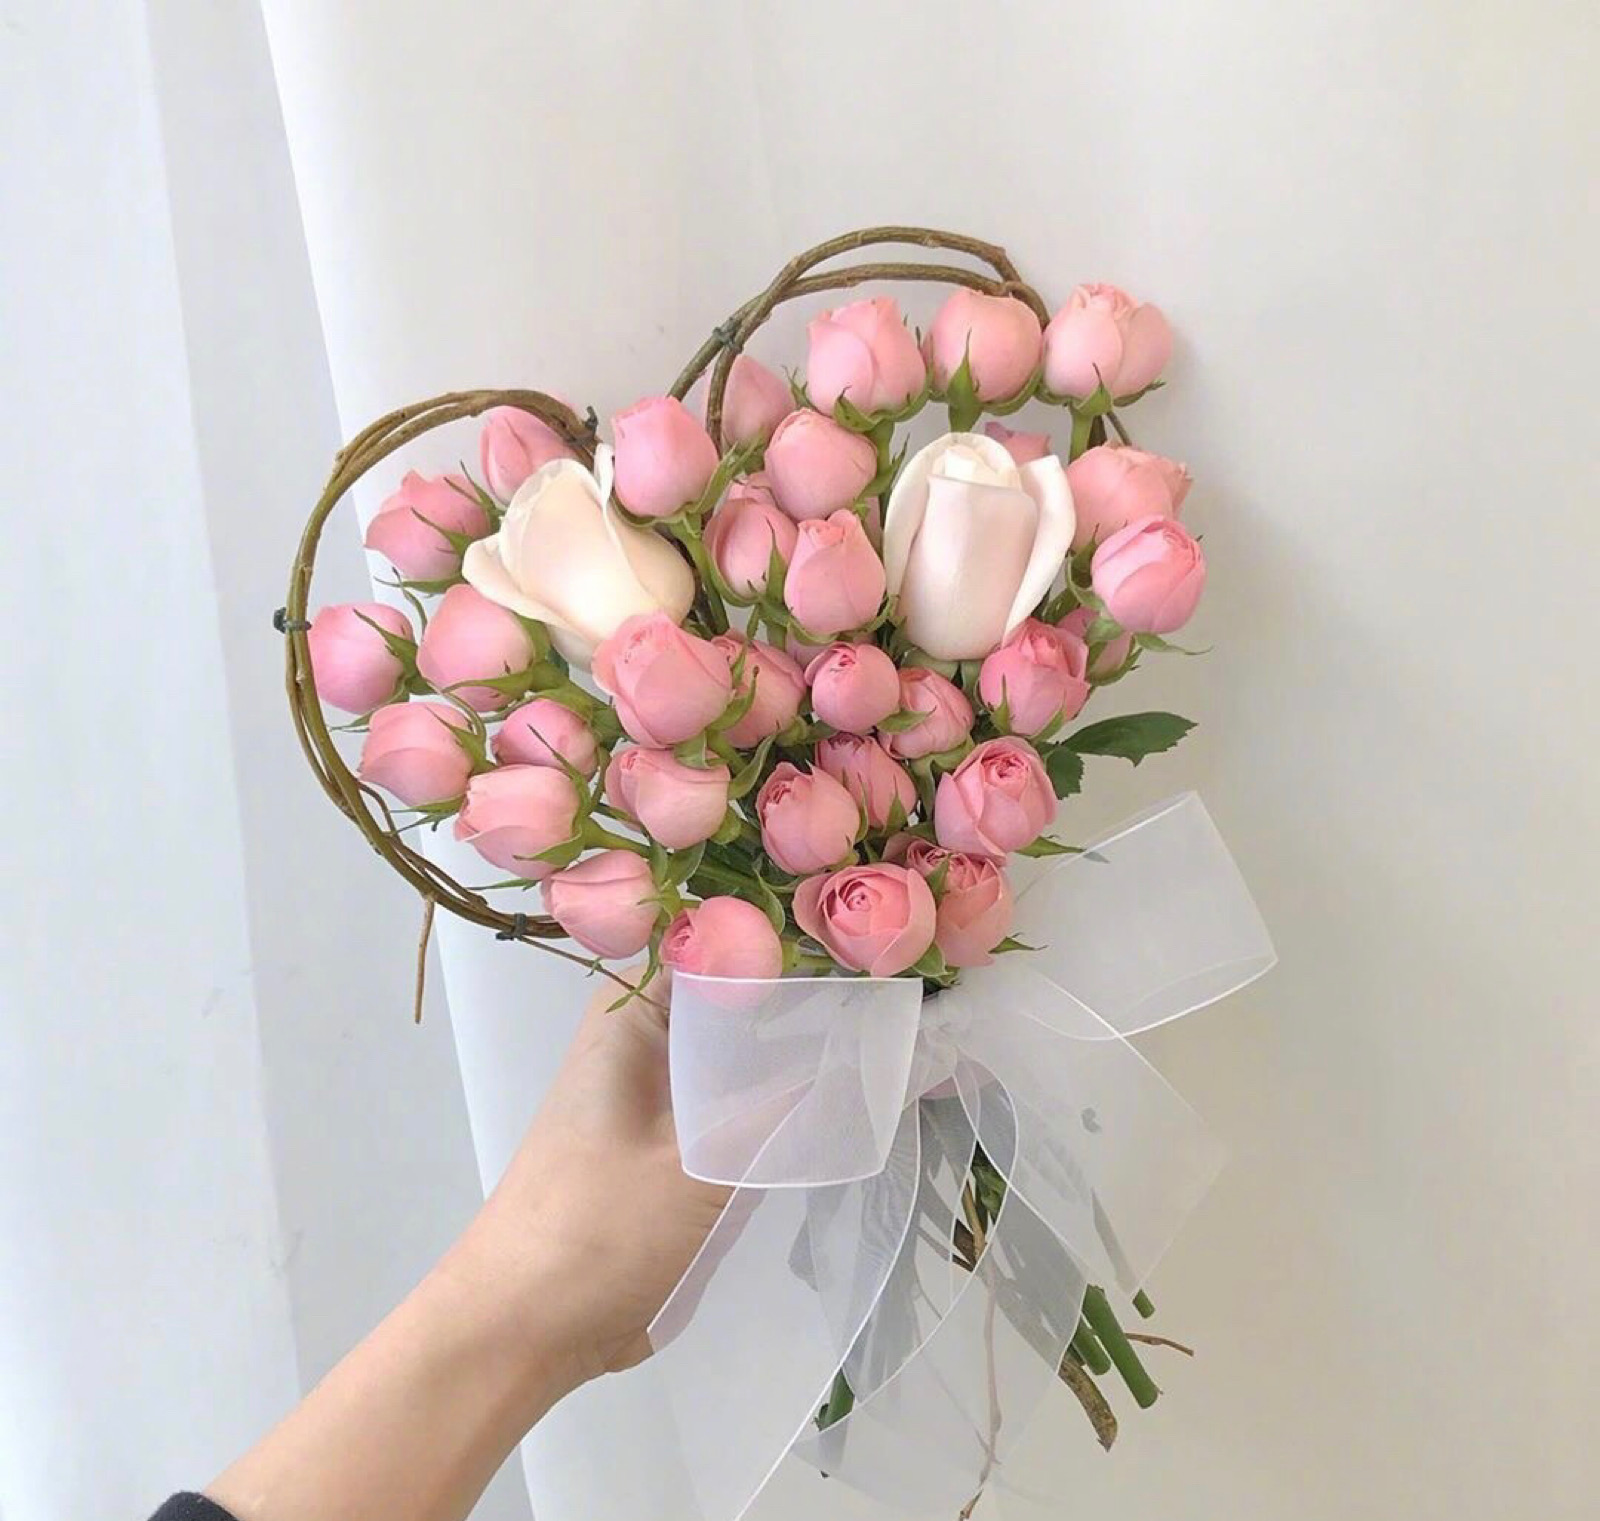 心形玫瑰花束属于春天和少女的淡粉色心形花束用心准备让鲜花礼物更有